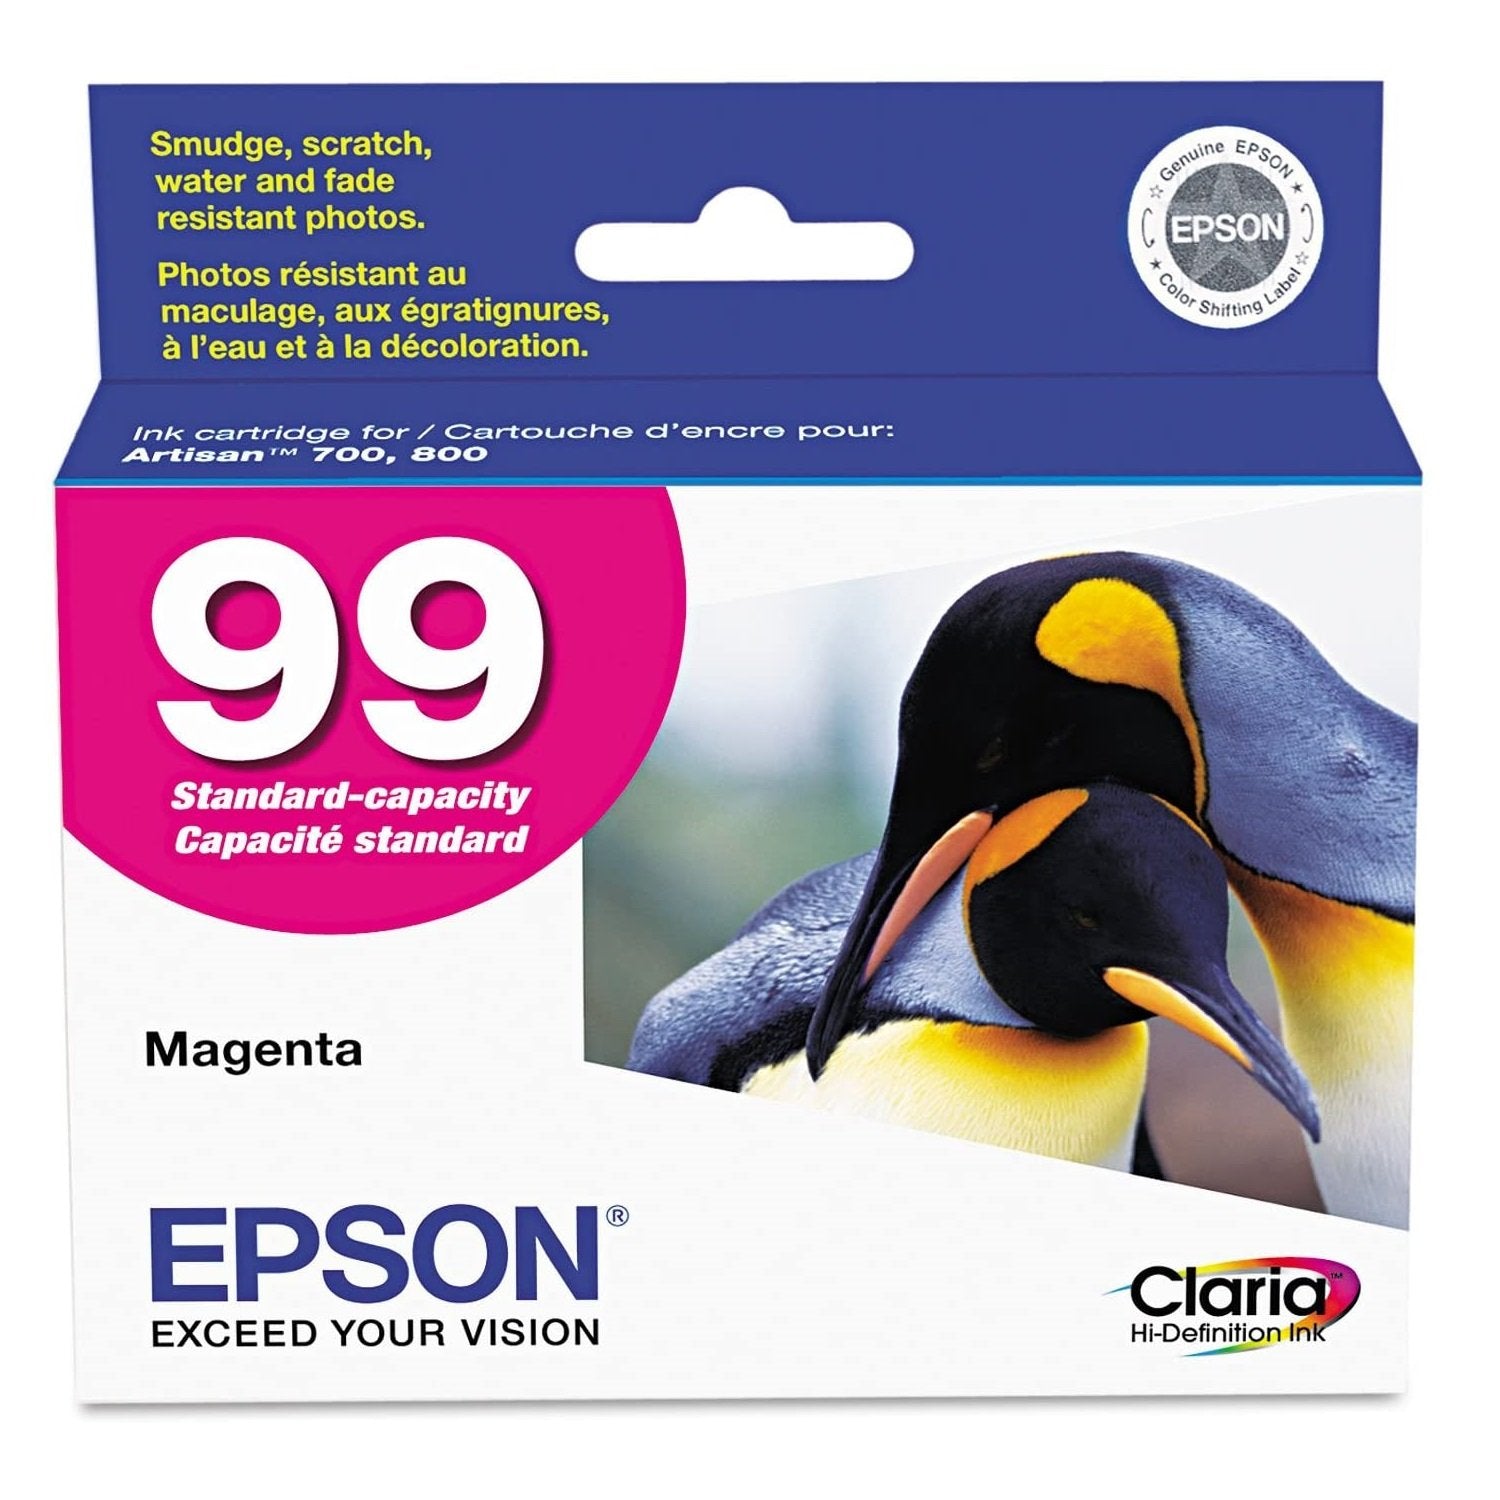 Absolute Toner Epson 99 Original Genuine OEM Magenta Ink Cartridge | T099320S Original Epson Cartridge